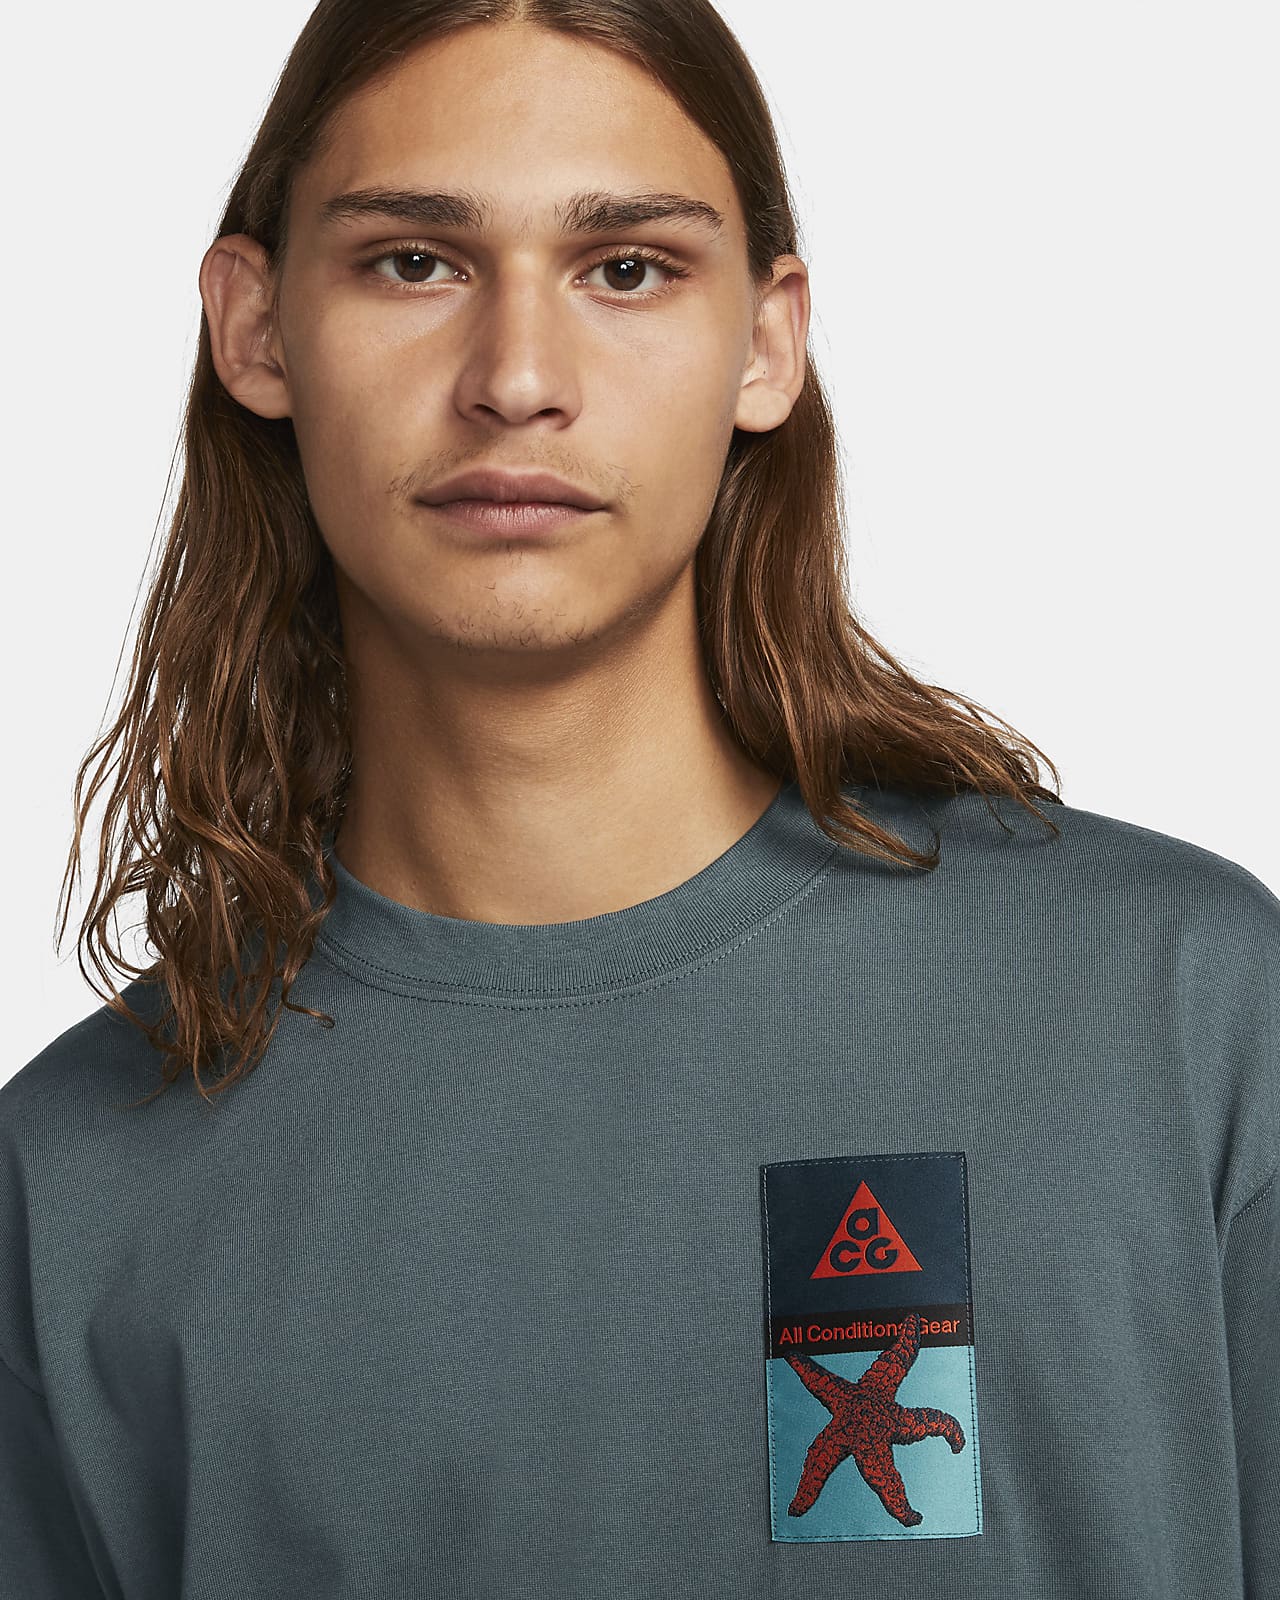 gek geworden straal Wegrijden Nike ACG T-shirt met patch voor heren. Nike NL